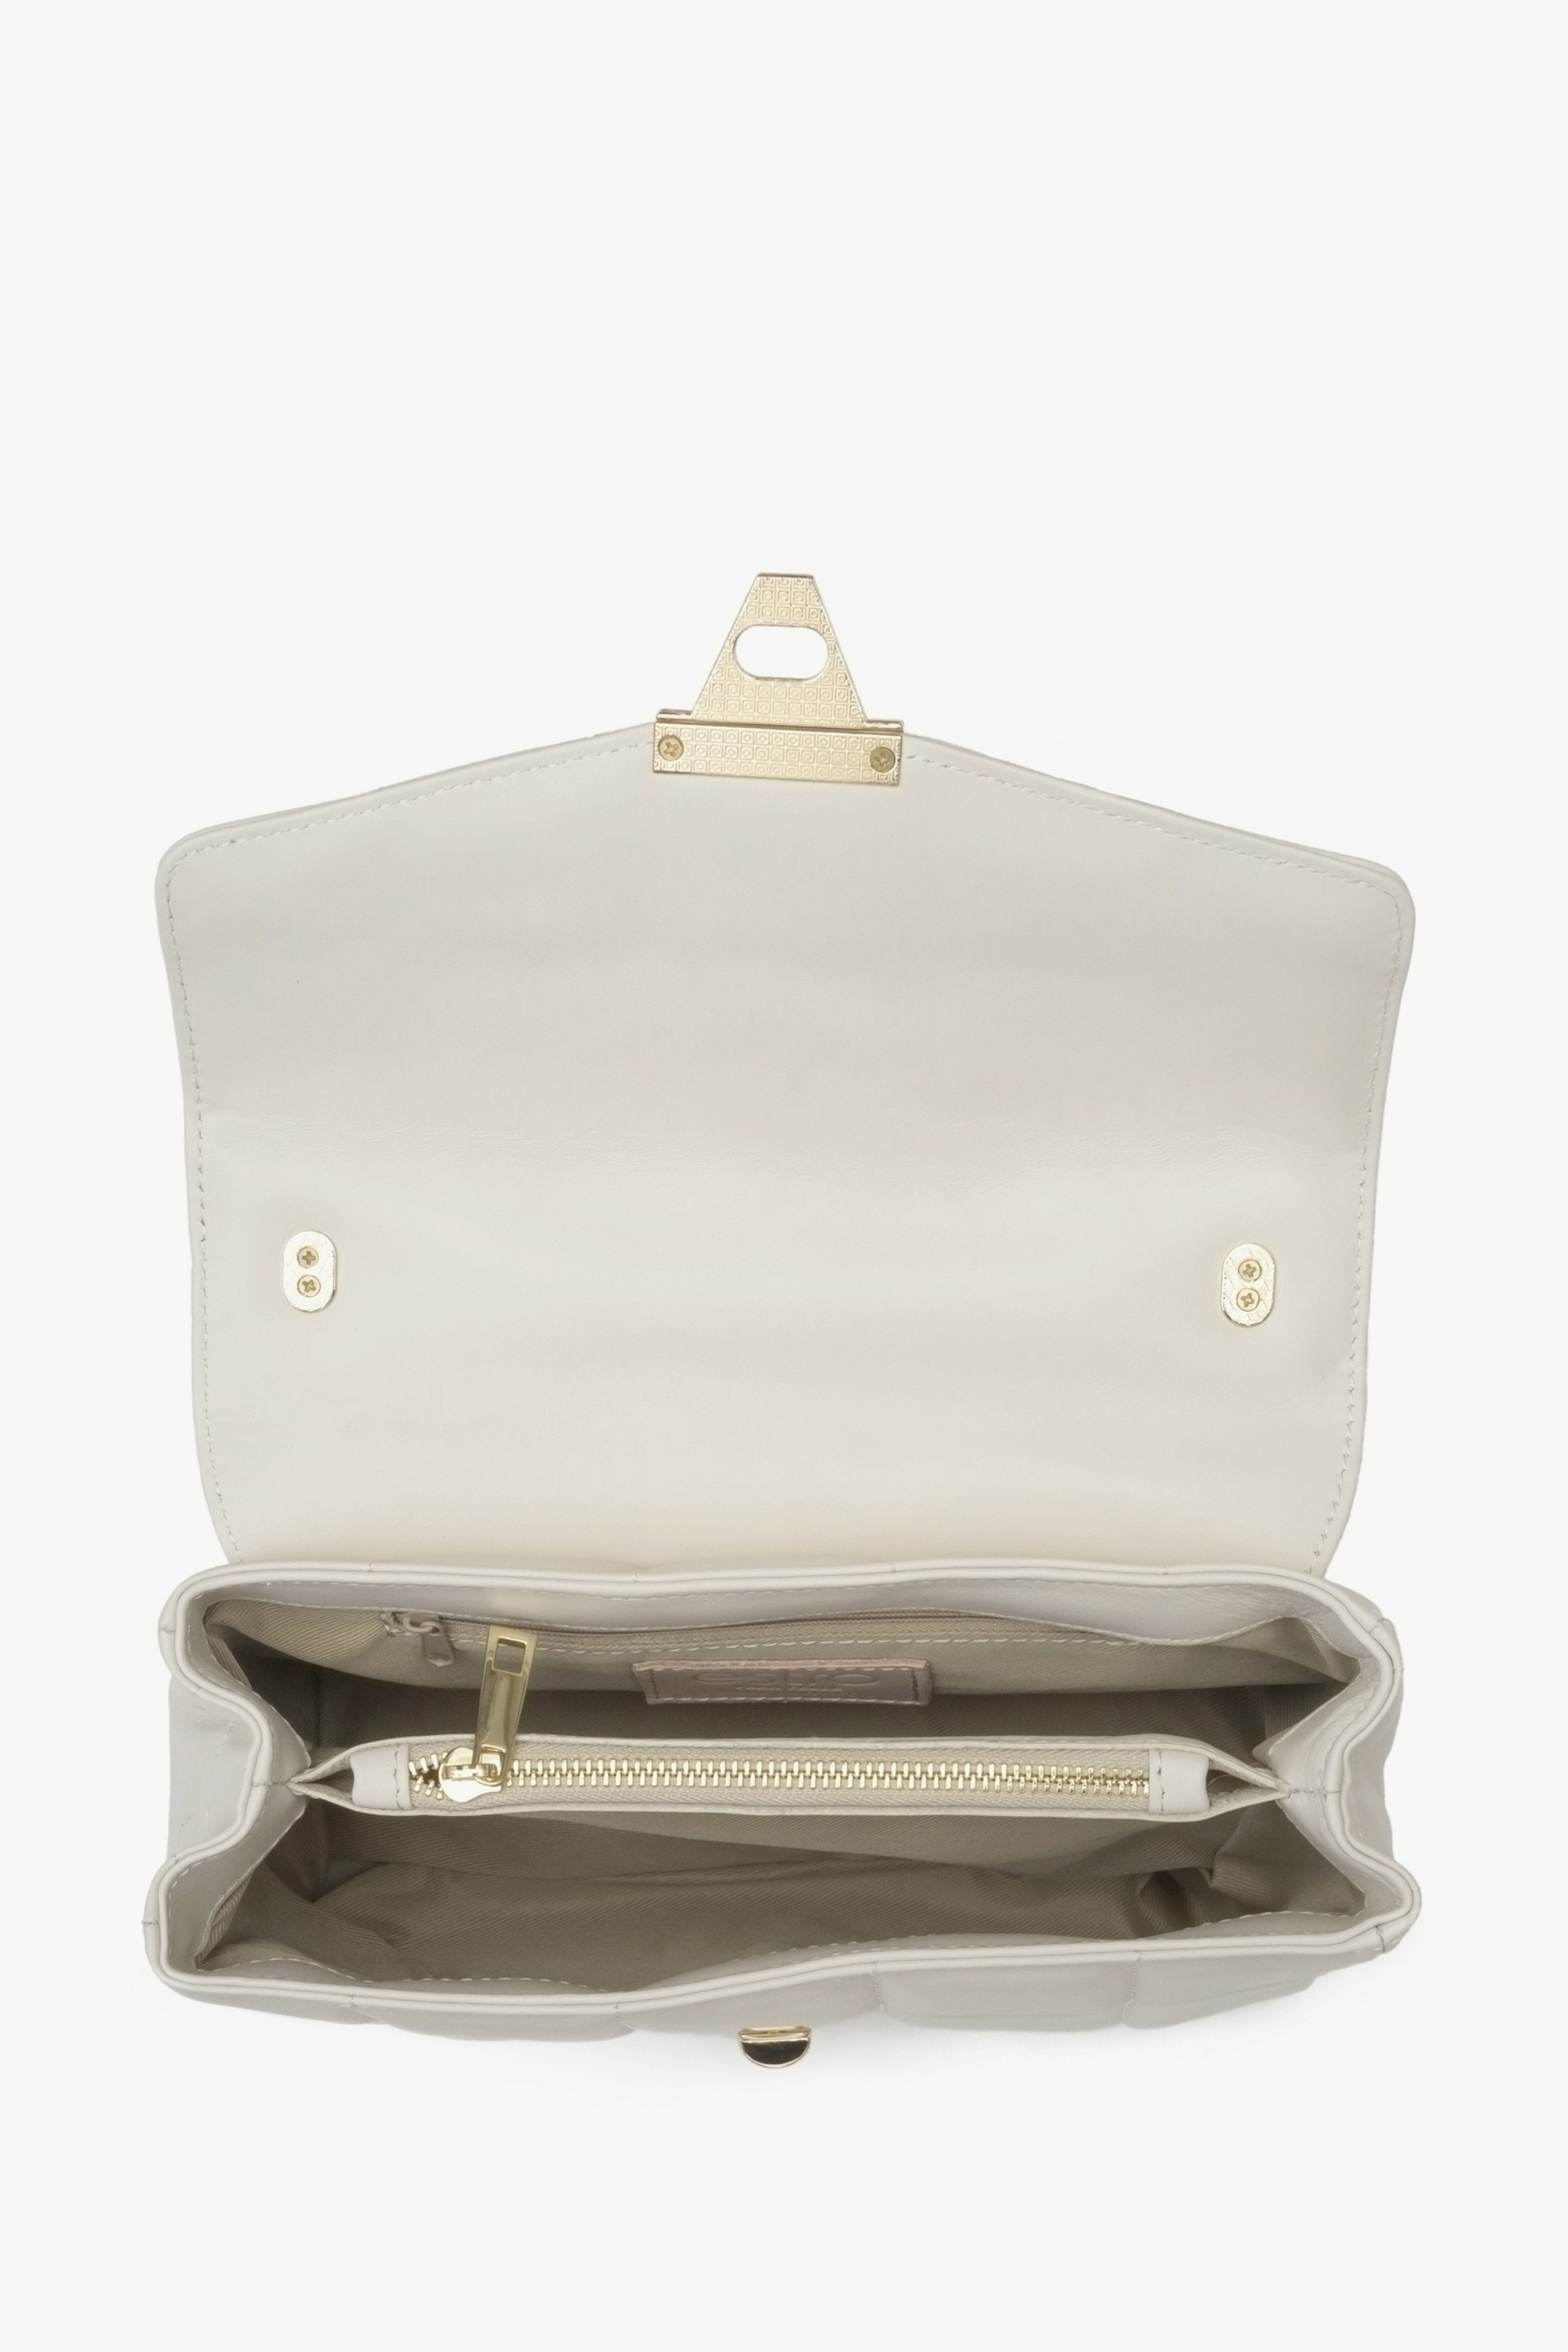 Mała, beżowa torebka damska z pikowaniem i złotym łańcuszkiem Estro - zbliżenie na wnętrze modelu.